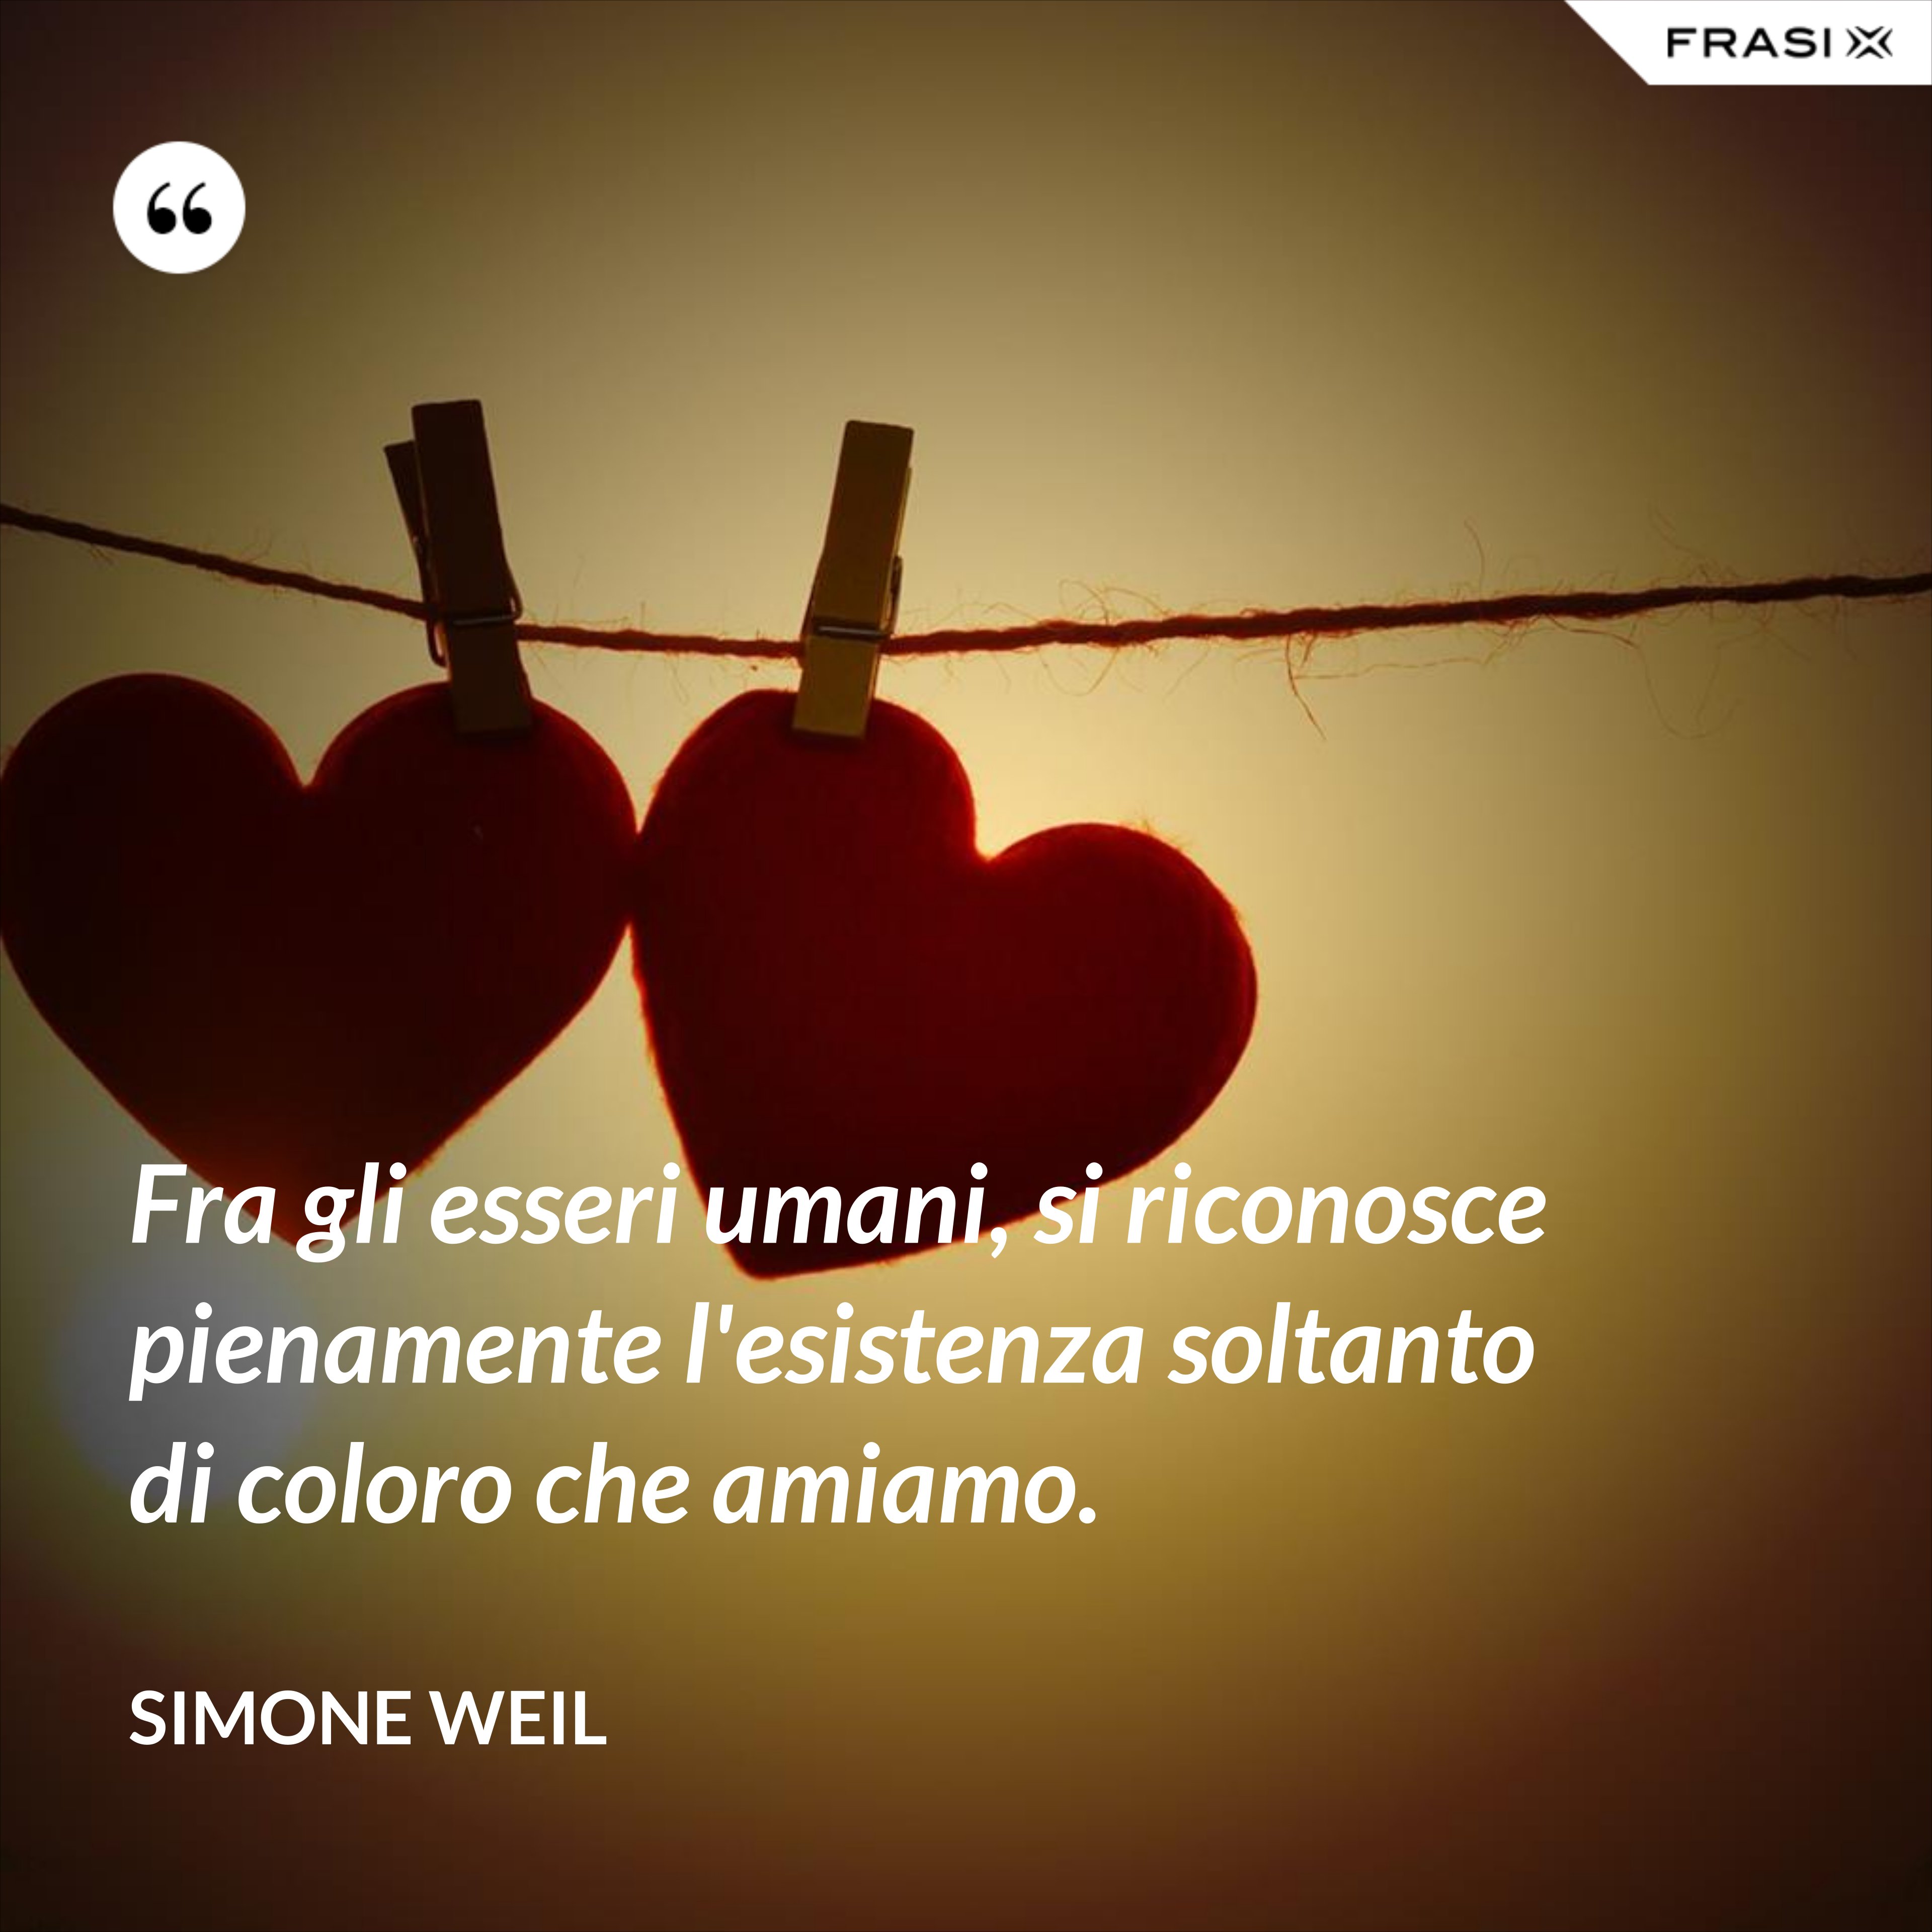 Fra gli esseri umani, si riconosce pienamente l'esistenza soltanto di coloro che amiamo. - Simone Weil